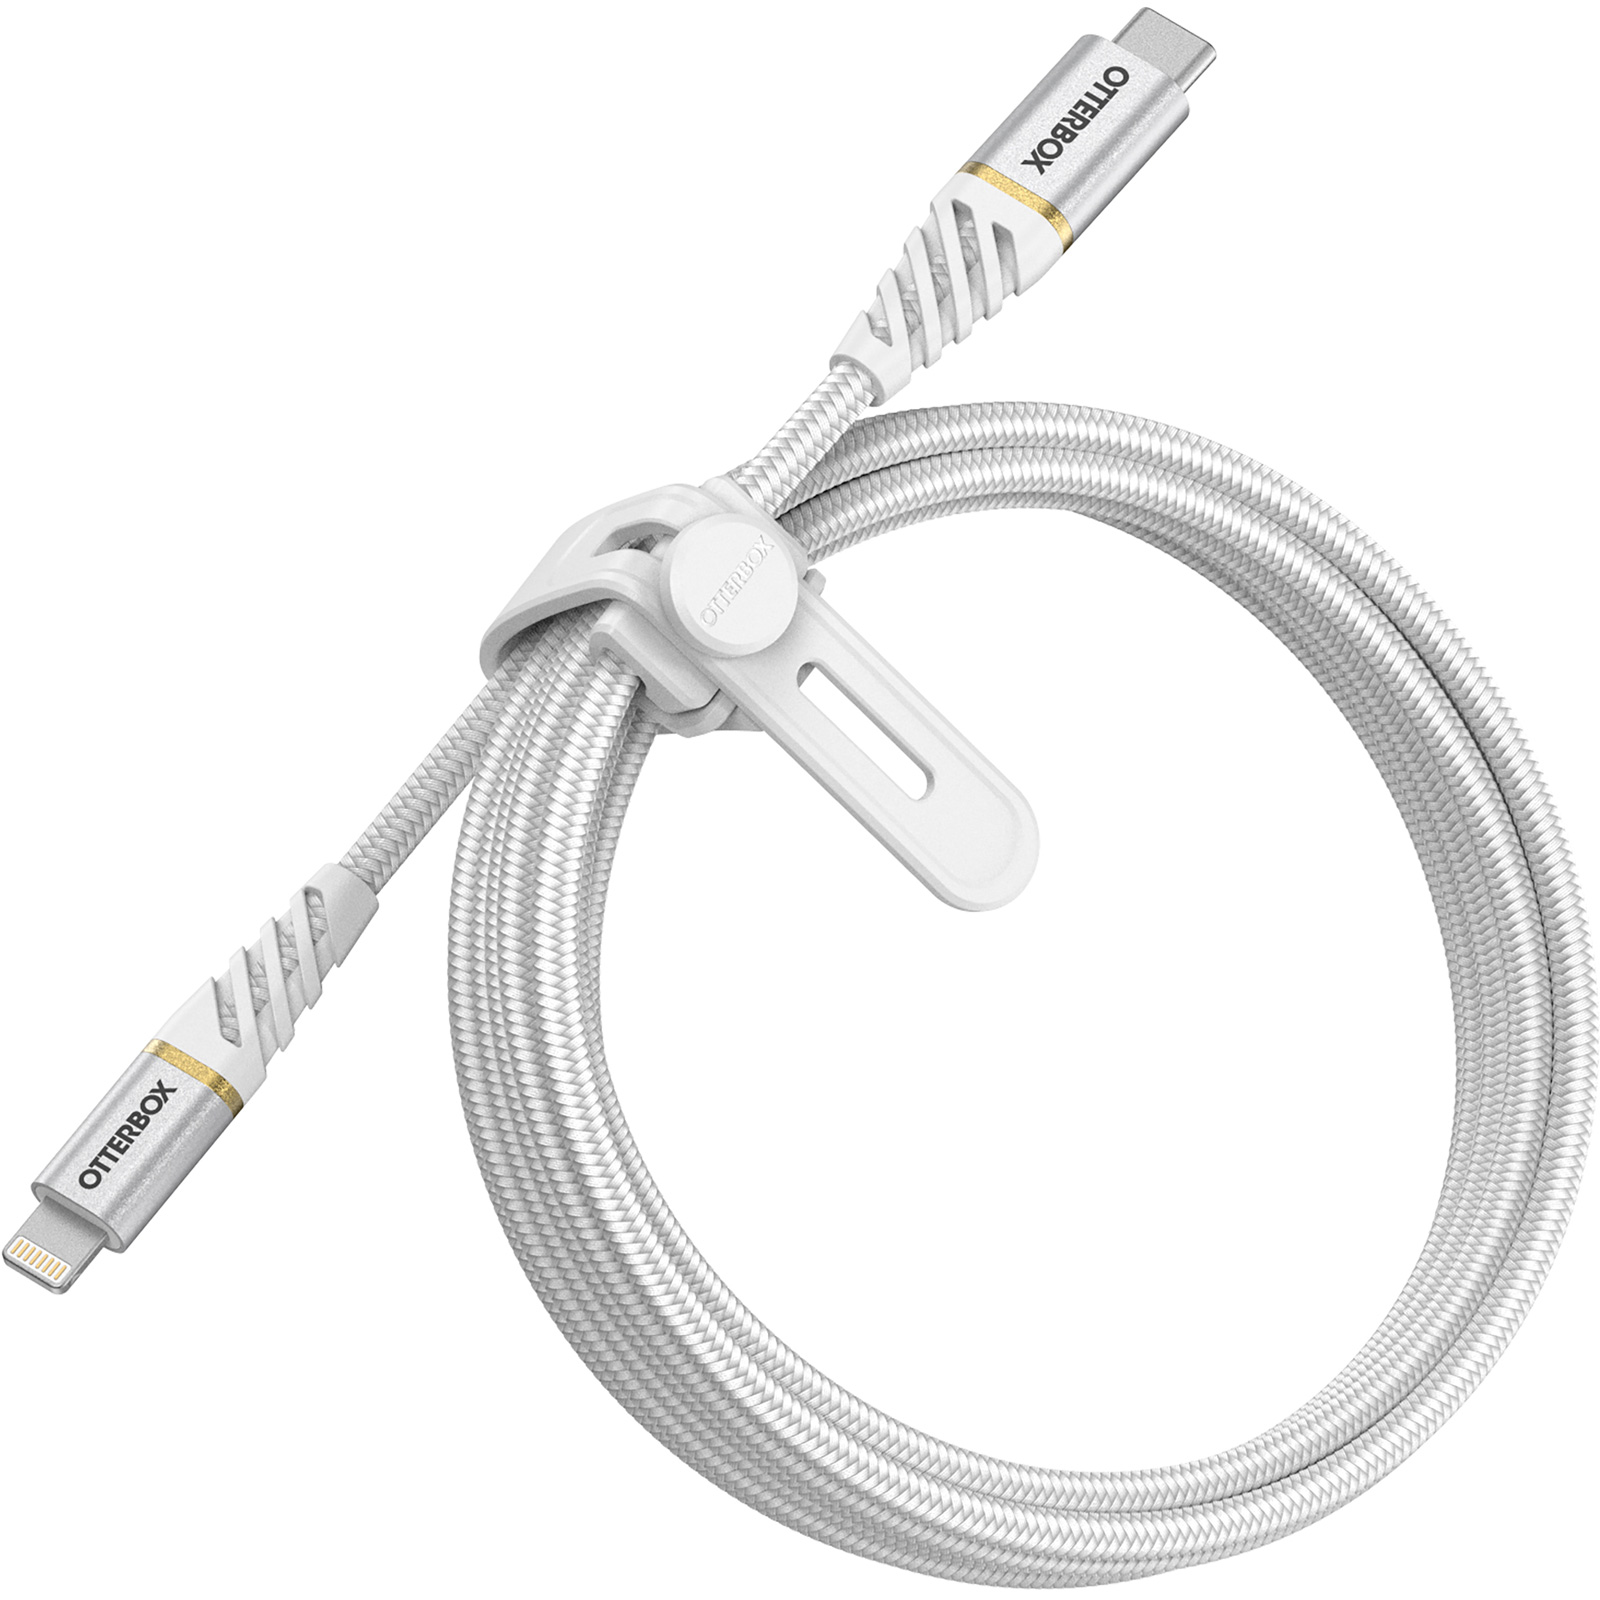 Cable Usb-C a Lightning carga rápida para iPhone 11 12 13 X Ipad — LST